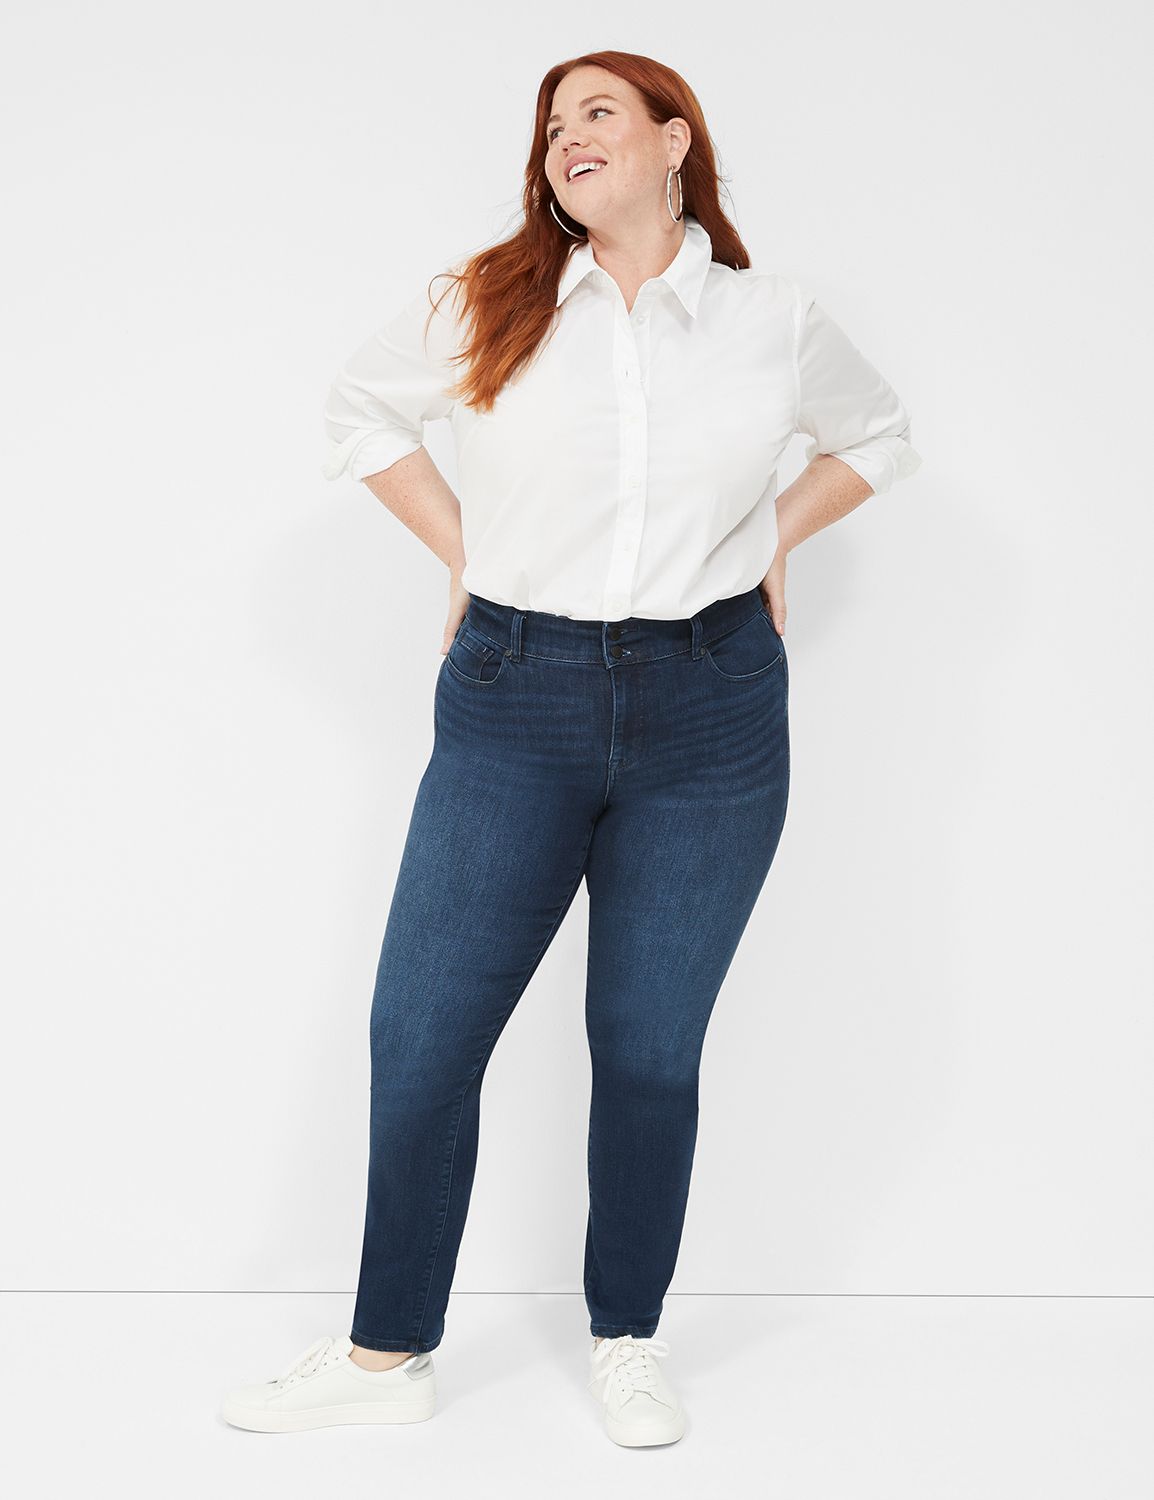 spanx jeans for big tummy｜TikTok Search